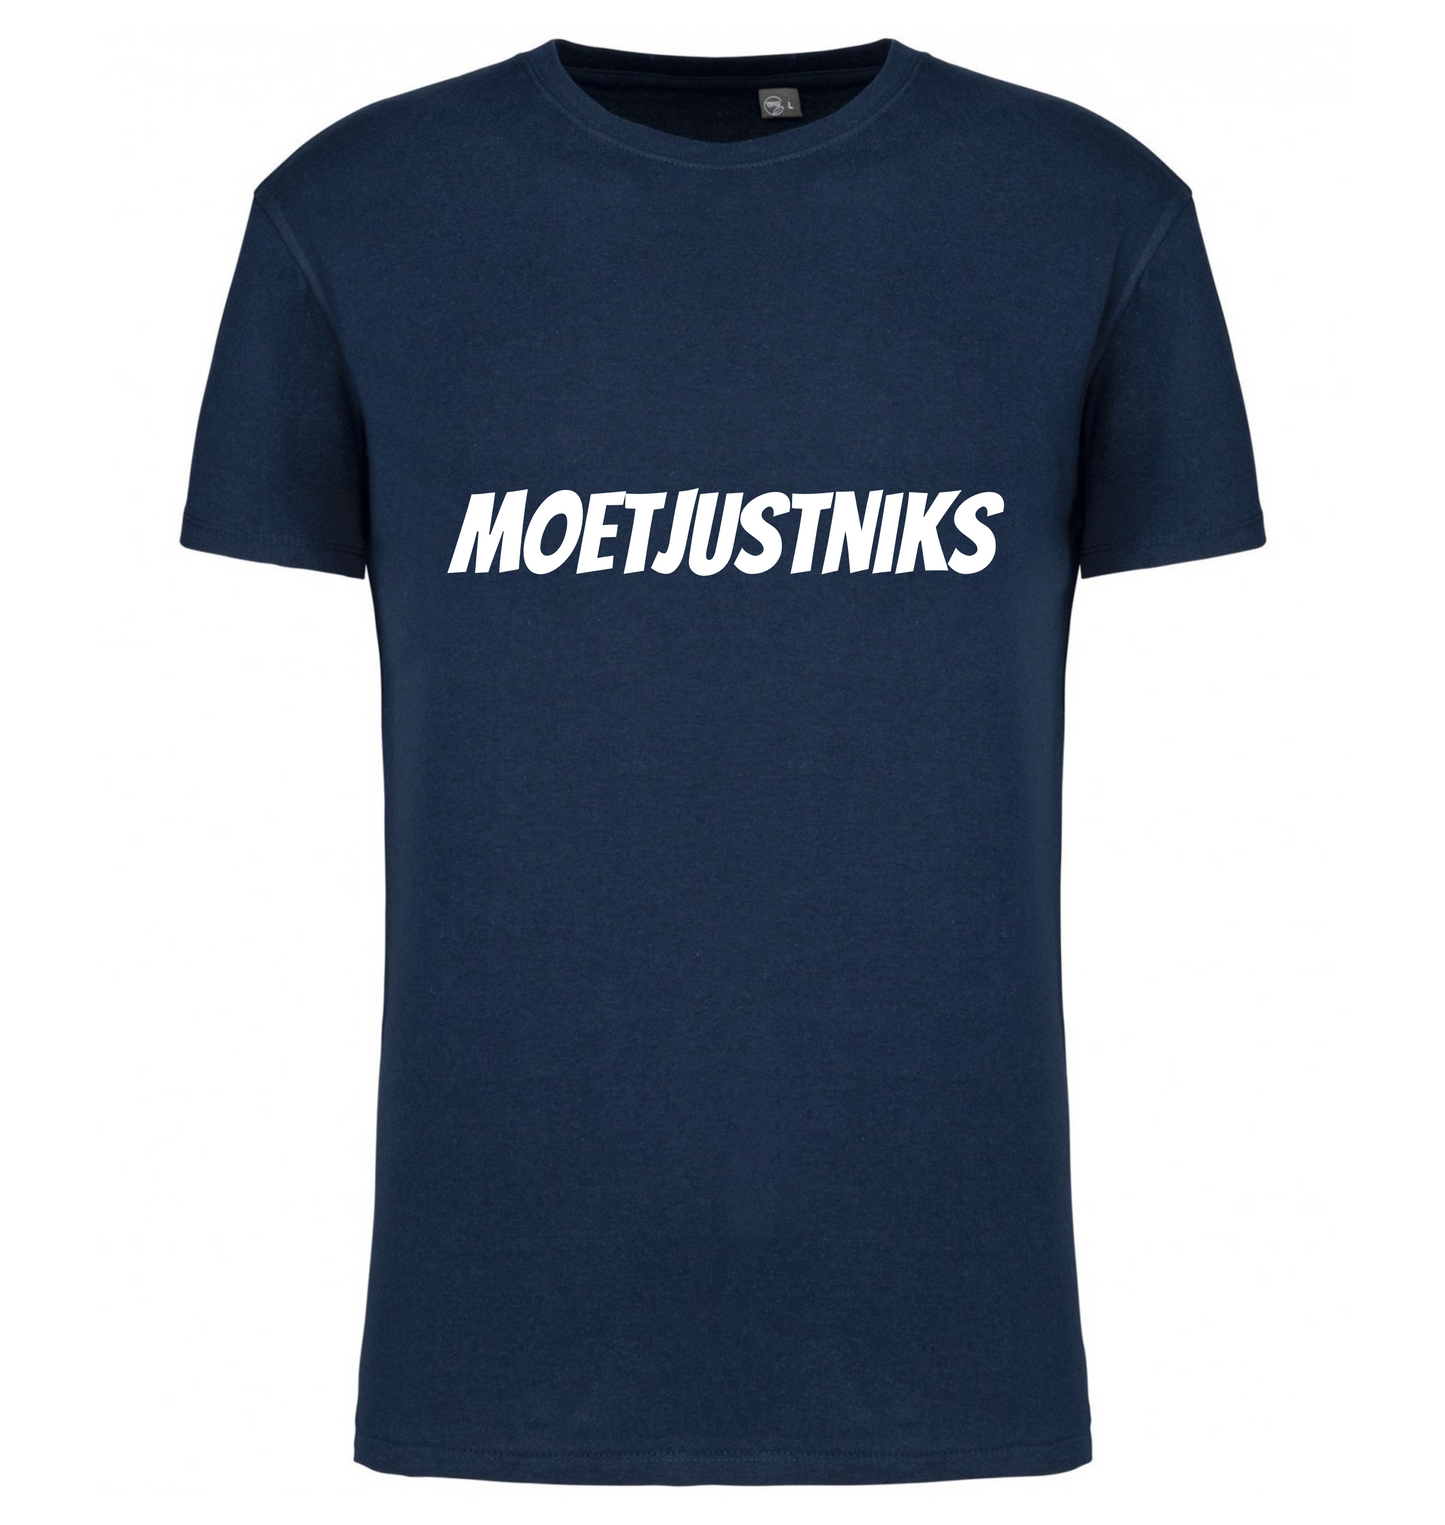 Premium T-shirt Moet just niks - 100% Biokatoen